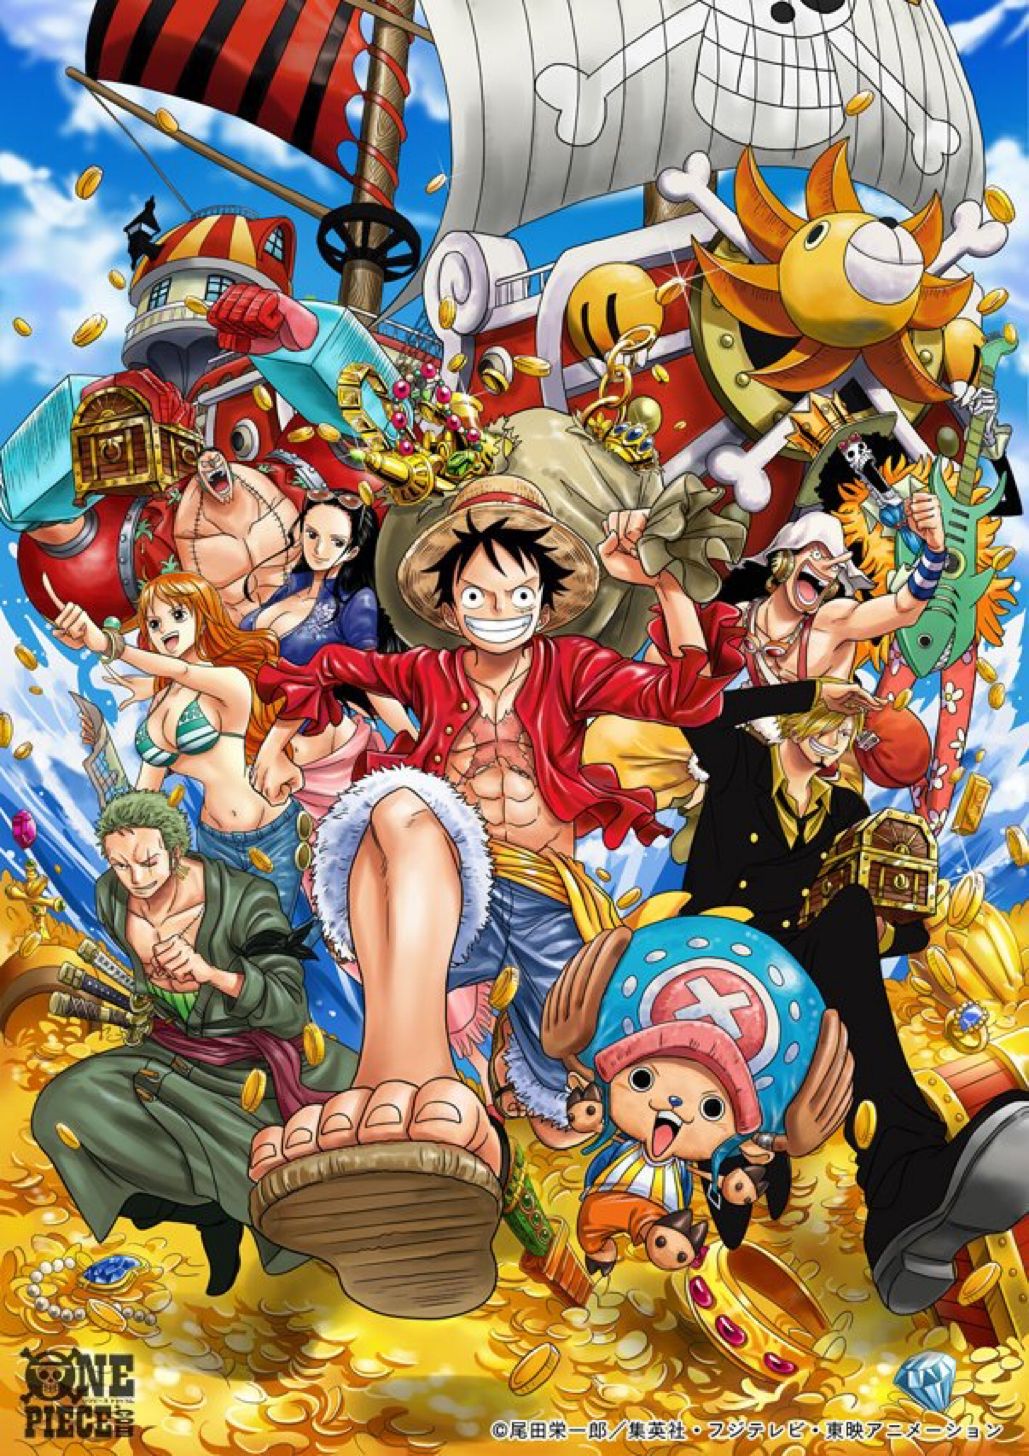 100+ Hình Ảnh One Piece Đẹp, Chất Lượng 3D, Full Hd, 4K